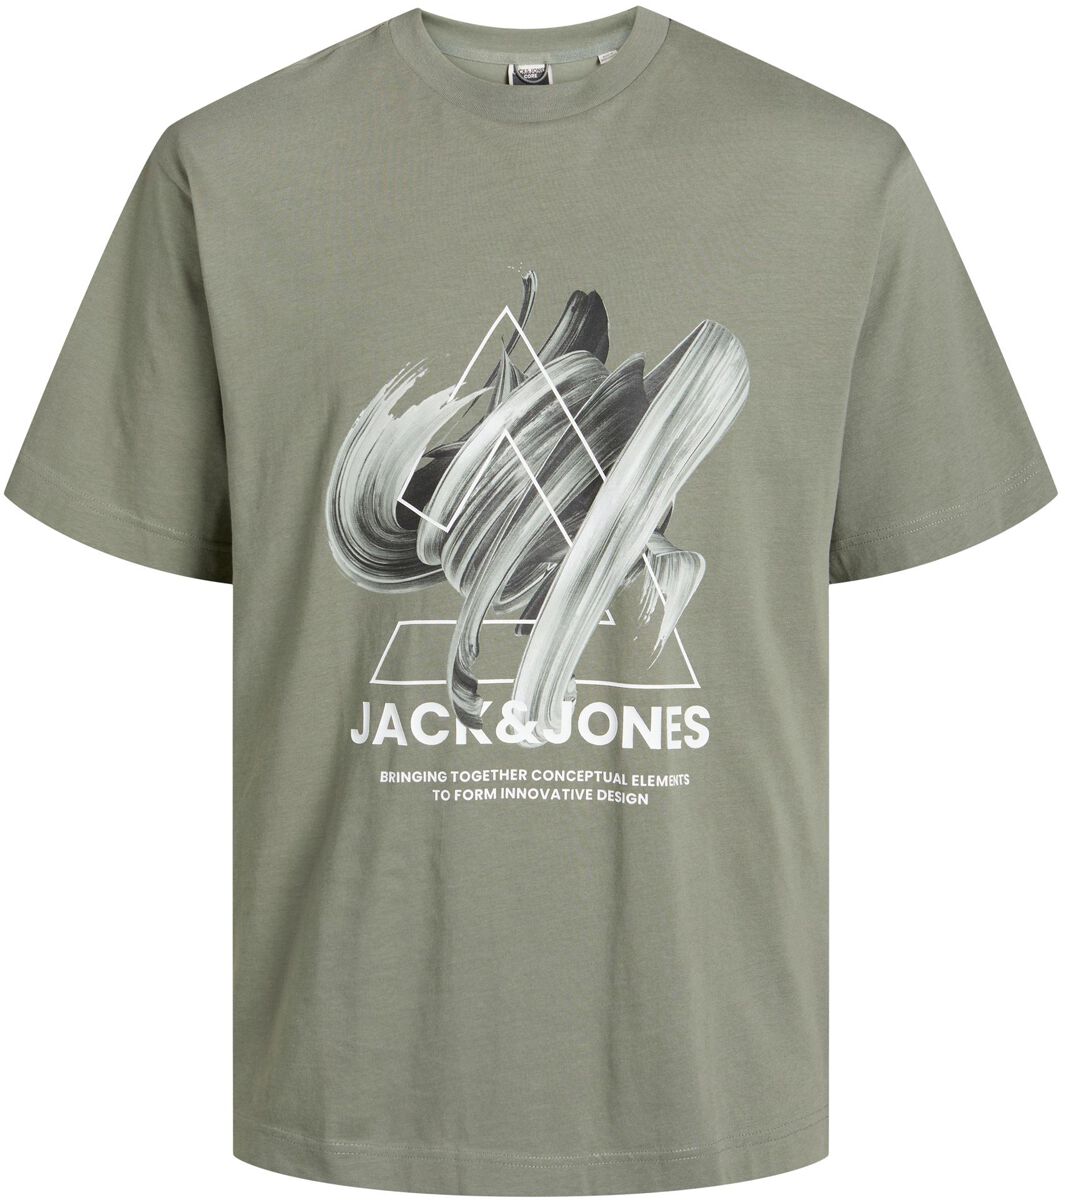 Jack & Jones Junior T-Shirt für Kinder - Jcotint Tee SS Crew Neck JNR - für Jungen - grün